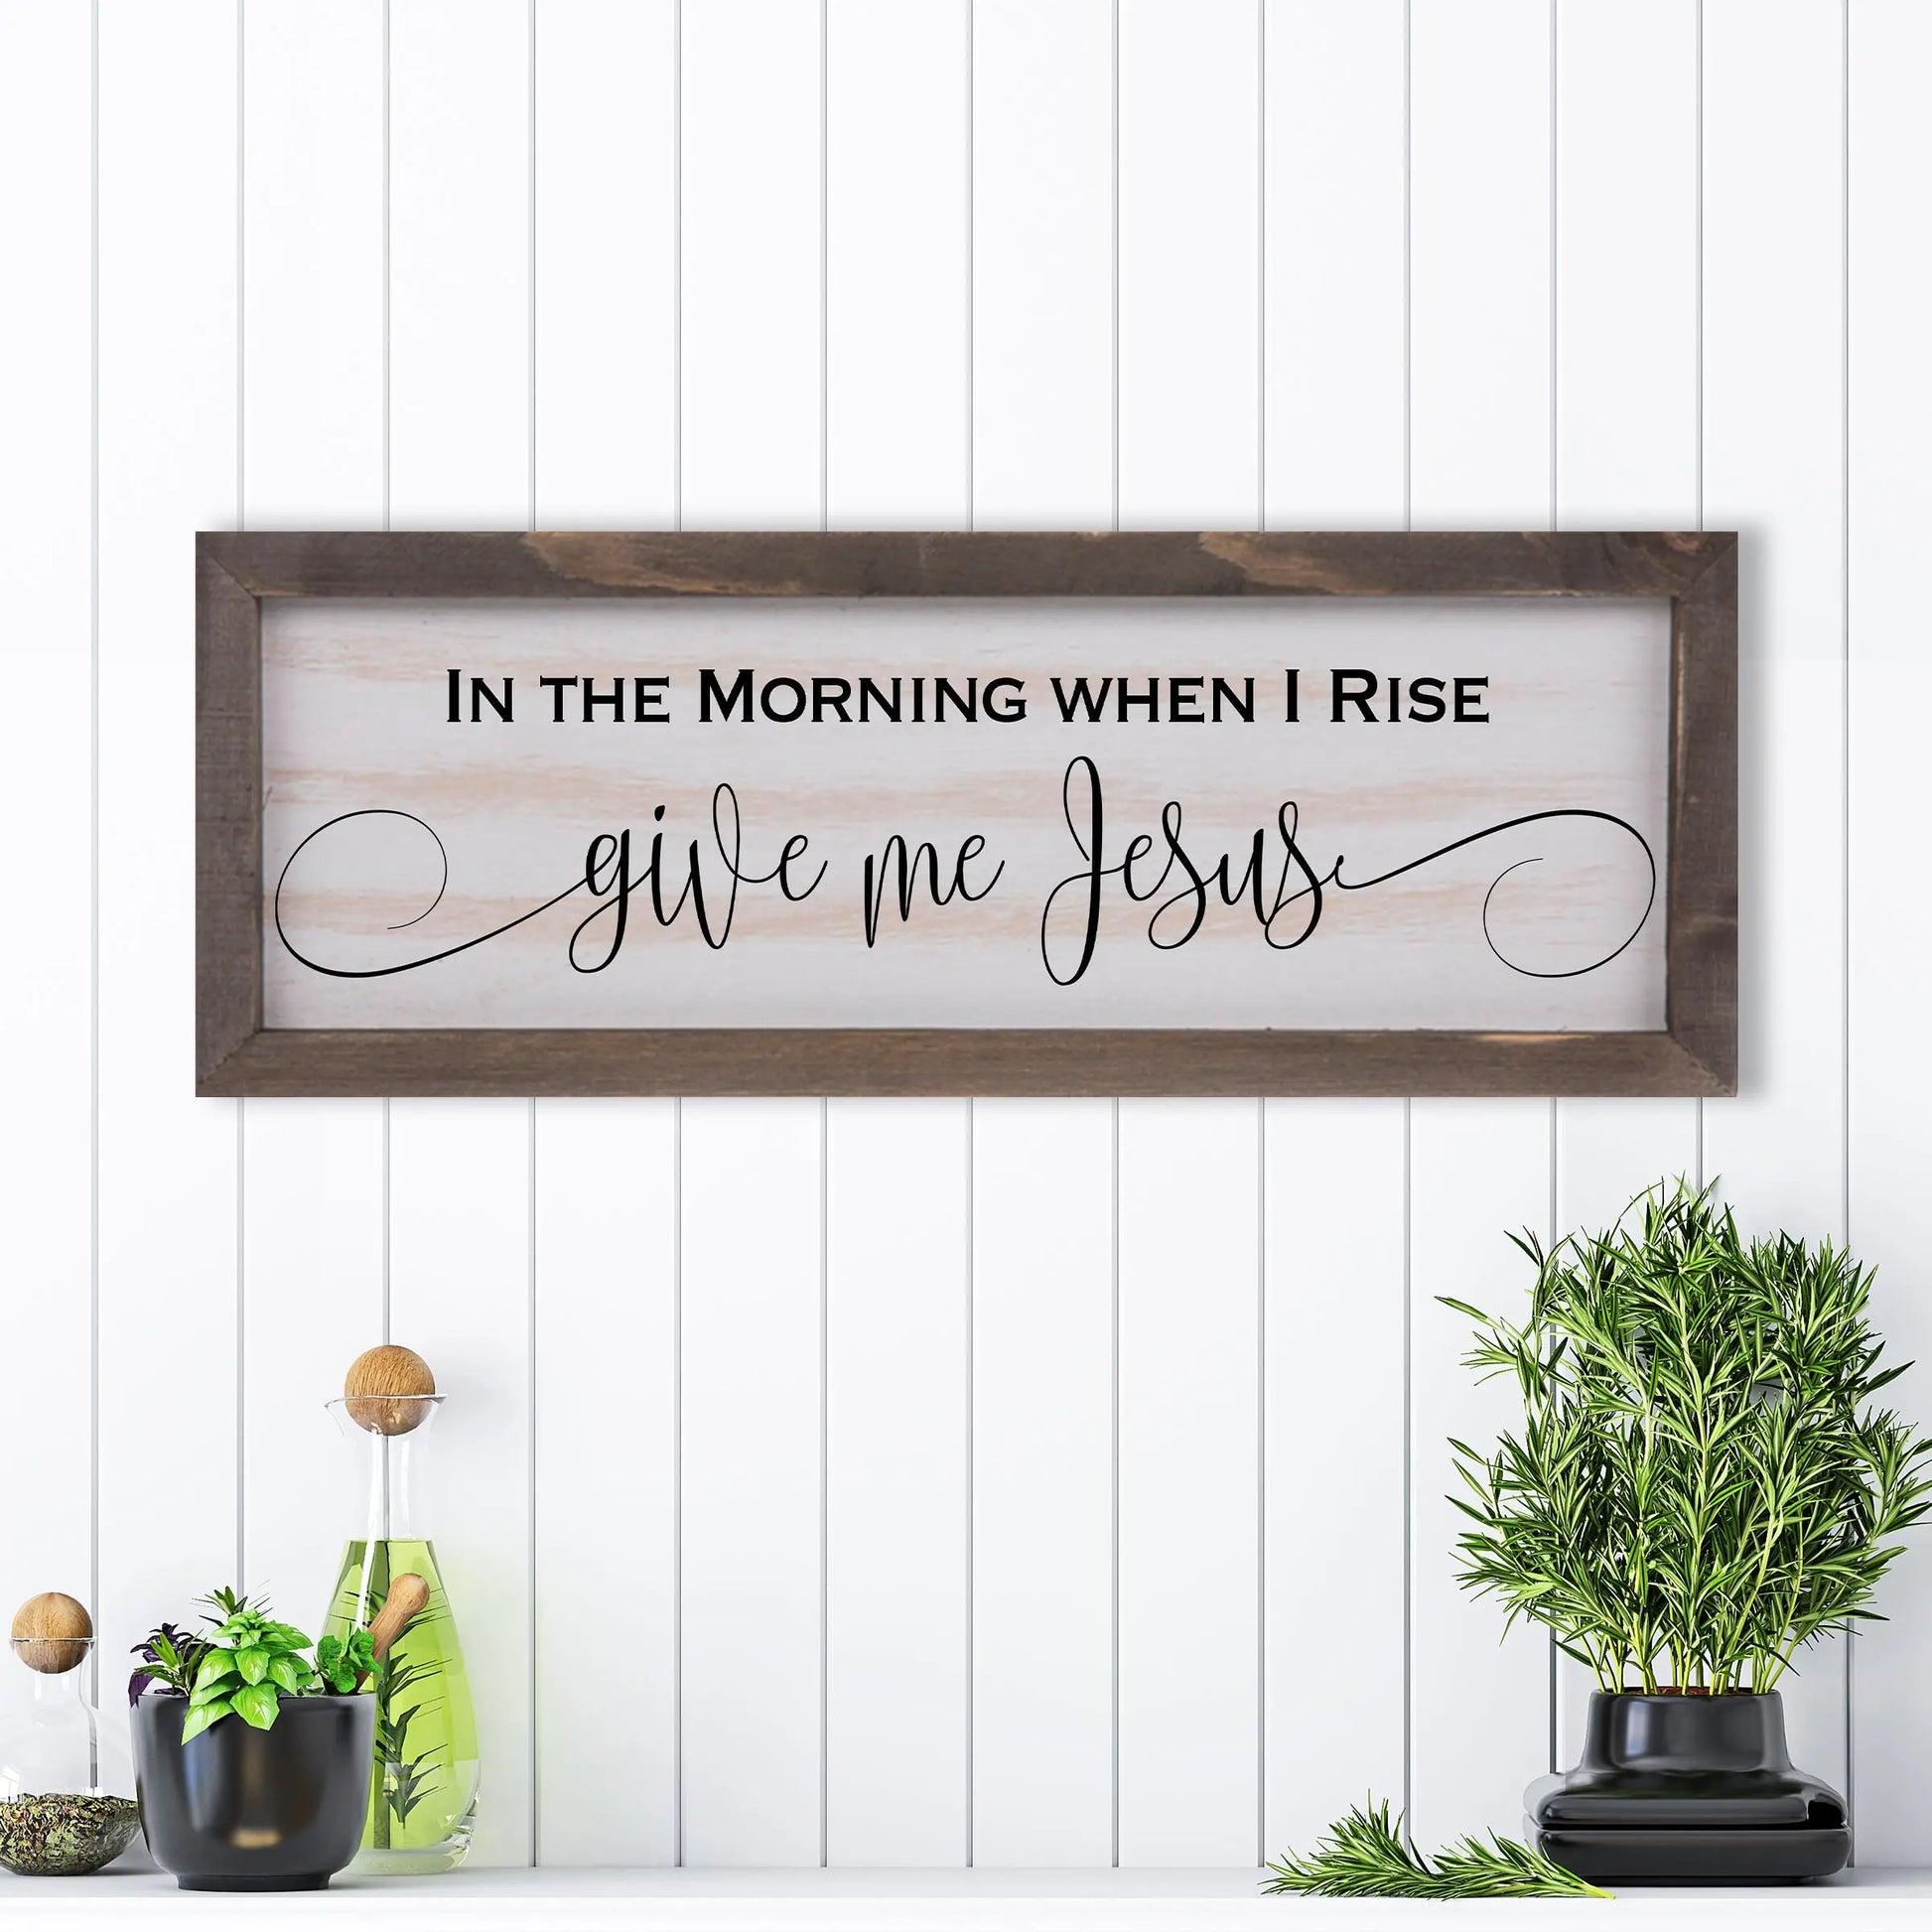 Give Me Jesus Rustic Whitewashed Wood Frame Sign | 5.5" x 15" Farmhouse Decor | Christian Wood Decor amazingfaithdesigns